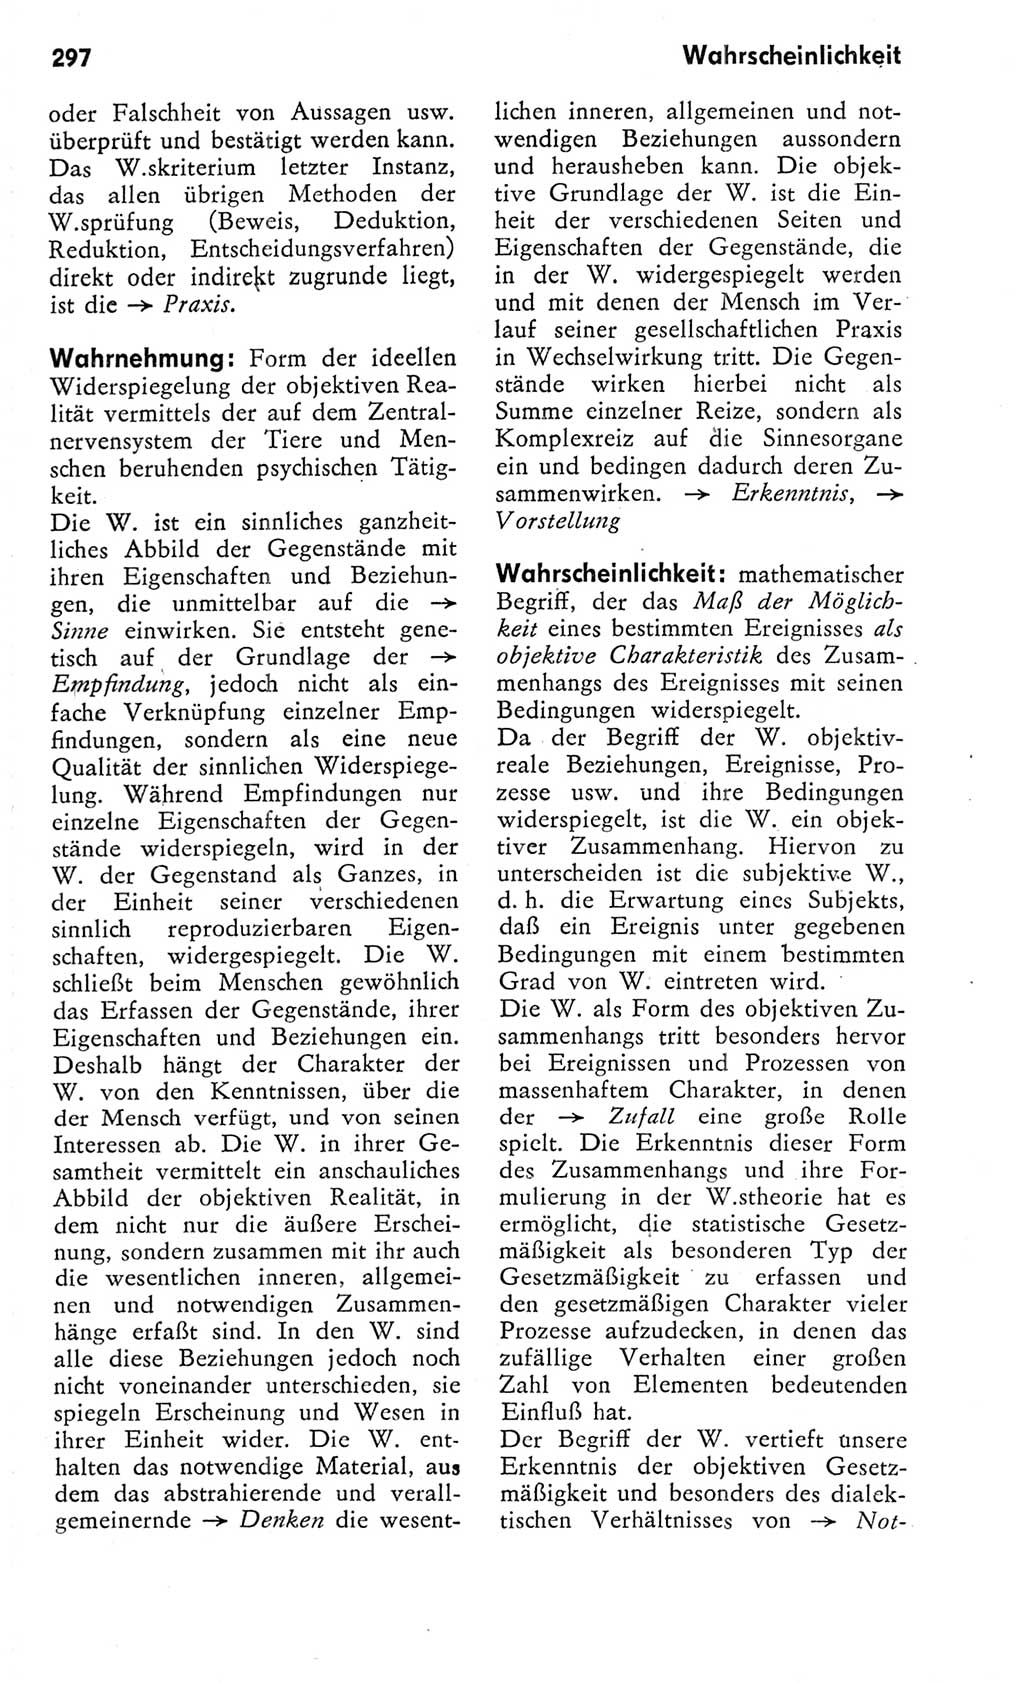 Kleines Wörterbuch der marxistisch-leninistischen Philosophie [Deutsche Demokratische Republik (DDR)] 1975, Seite 297 (Kl. Wb. ML Phil. DDR 1975, S. 297)